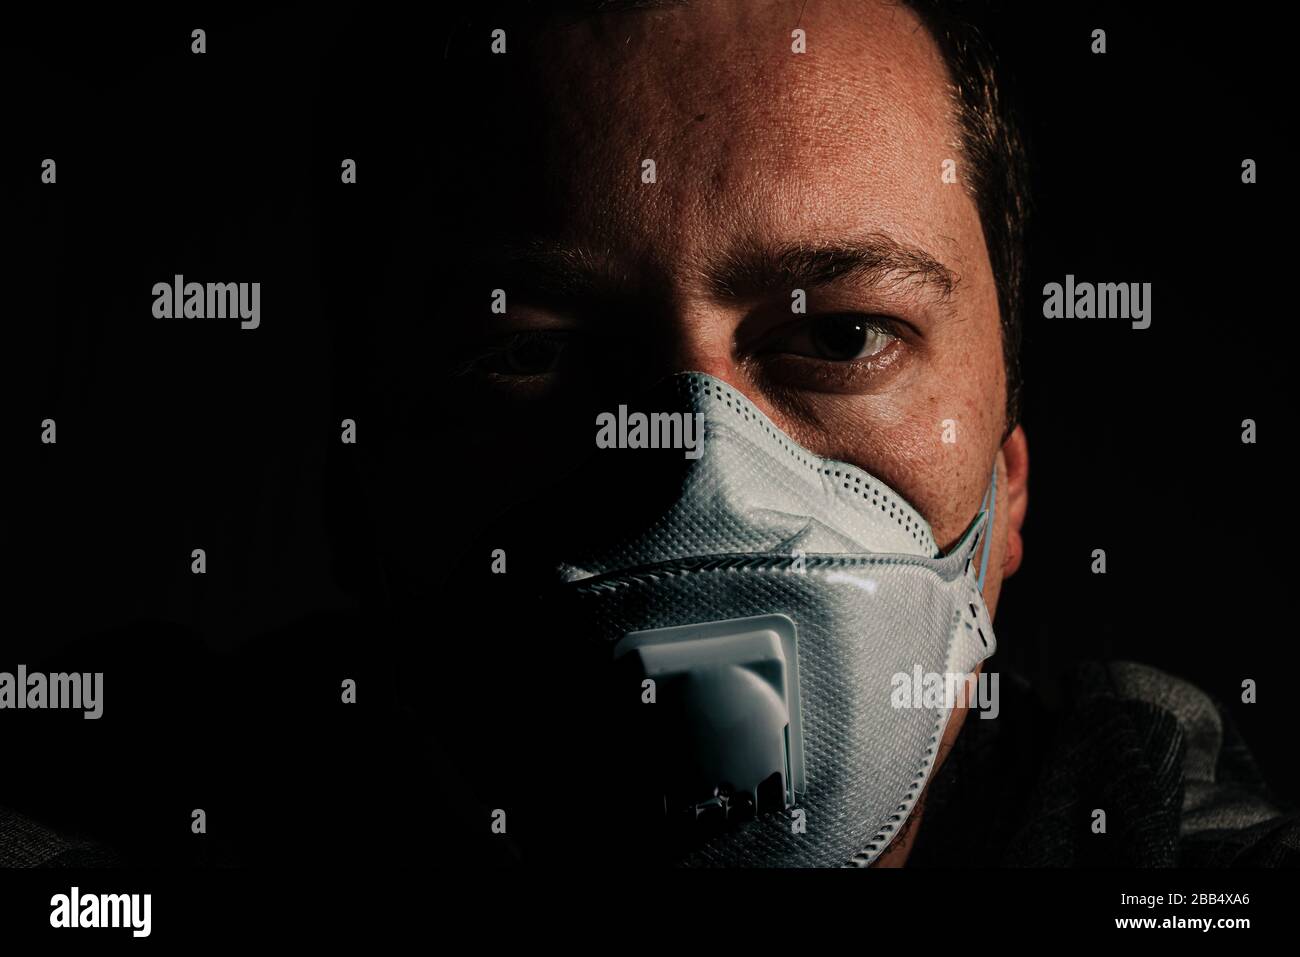 uomo con maschera respiratore per protezione coronavirus covid-19 su sfondo nero Foto Stock